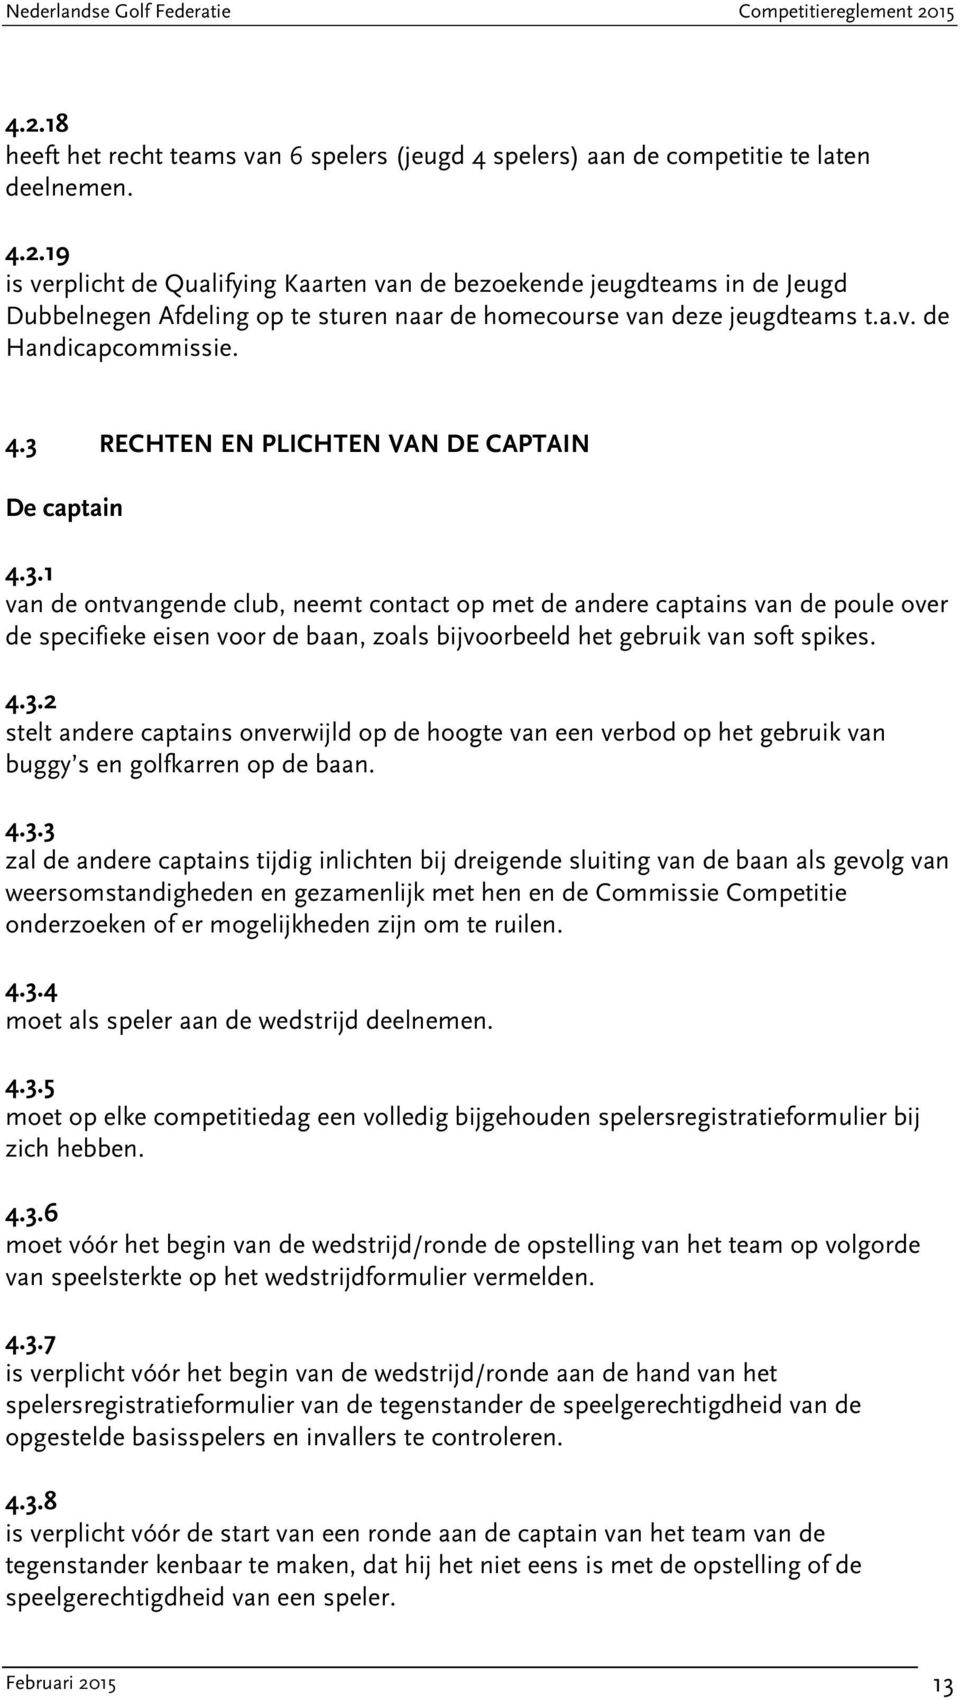 4.3.2 stelt andere captains onverwijld op de hoogte van een verbod op het gebruik van buggy s en golfkarren op de baan. 4.3.3 zal de andere captains tijdig inlichten bij dreigende sluiting van de